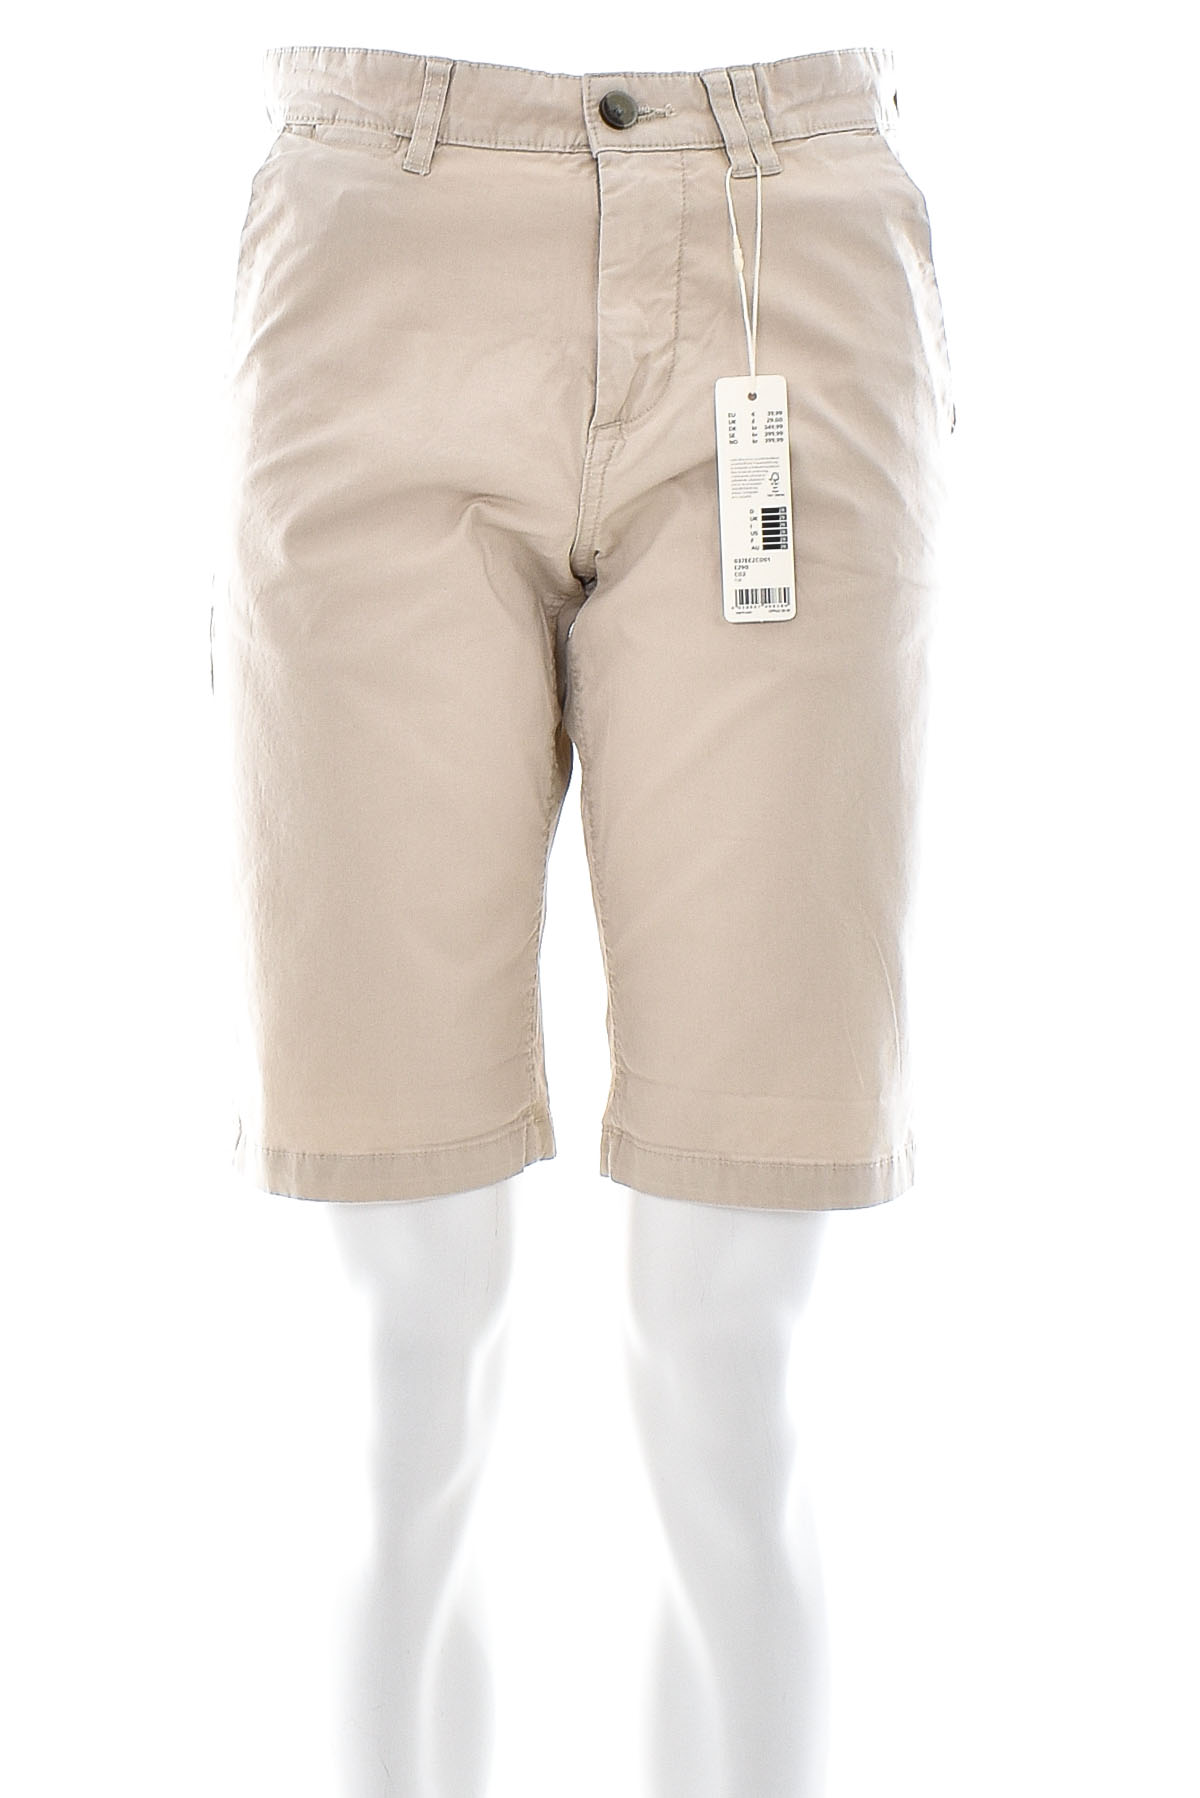 Pantaloni scurți bărbați - ESPRIT - 0